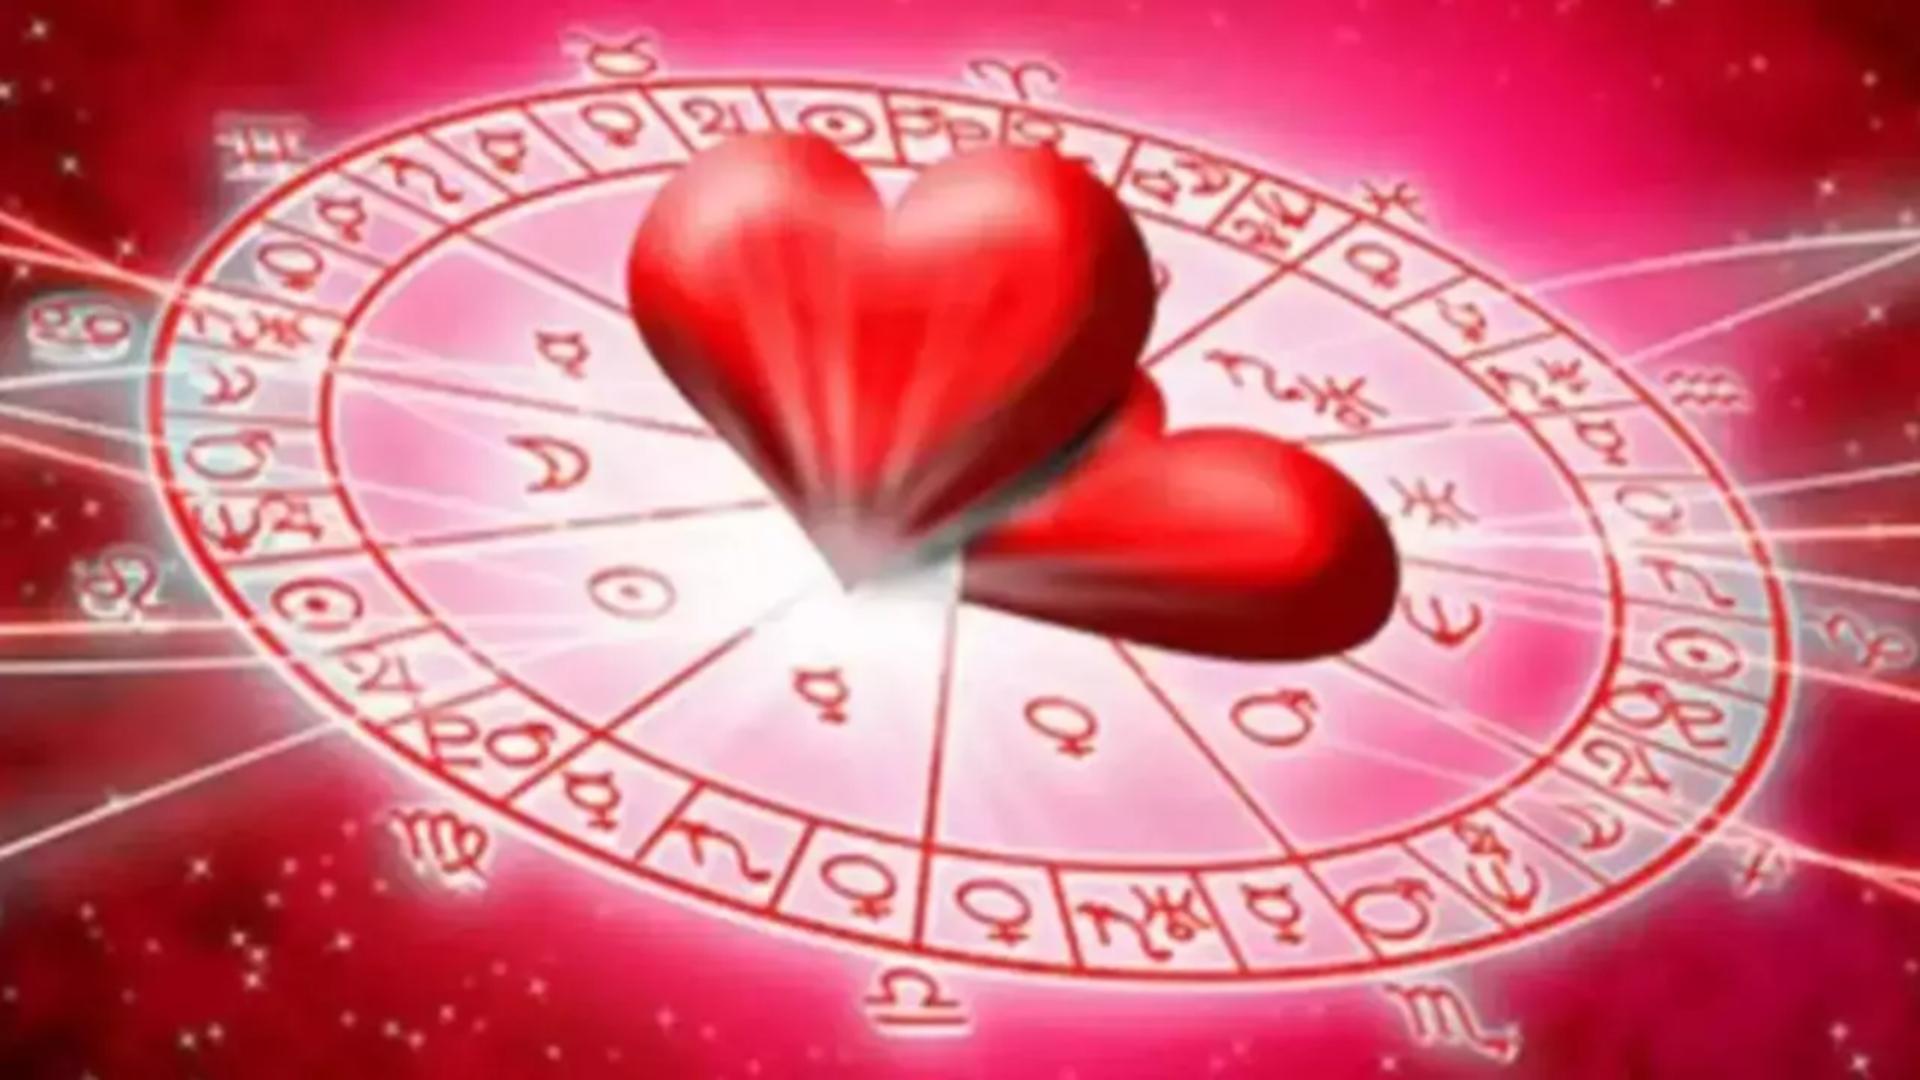 Horoscopul dragostei pentru weekendul de Florii. Ce zodii își întâlnesc jumătatea chiar în zi de sărbătoare